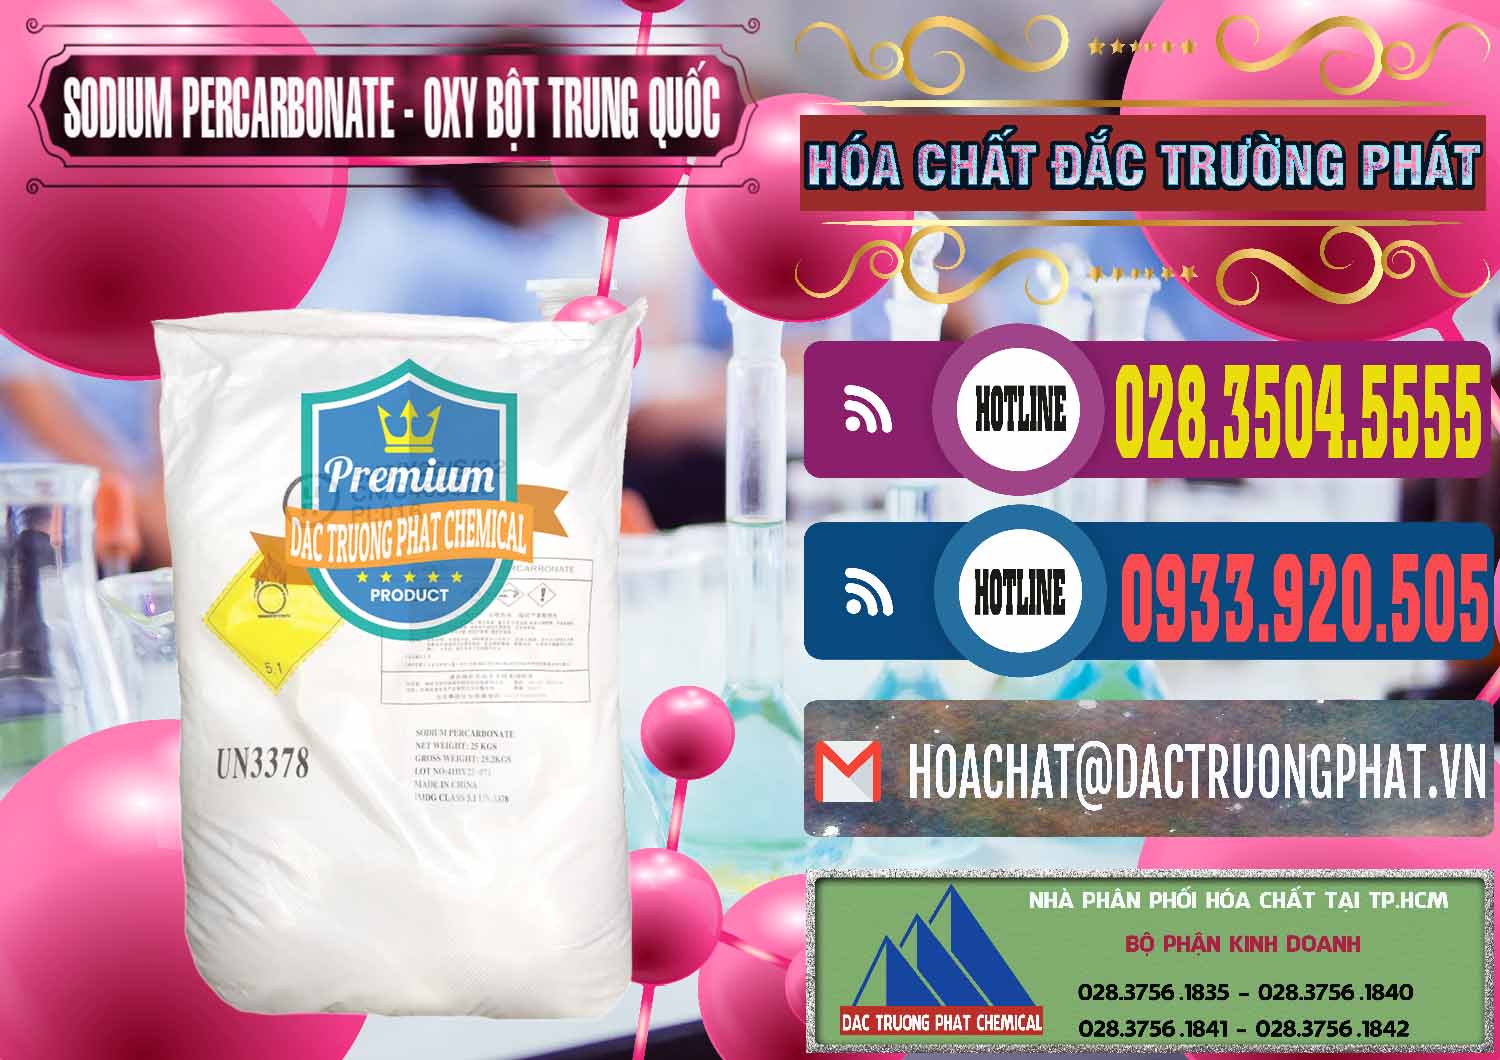 Bán Sodium Percarbonate Dạng Bột Trung Quốc China - 0390 - Công ty chuyên kinh doanh & cung cấp hóa chất tại TP.HCM - muabanhoachat.com.vn